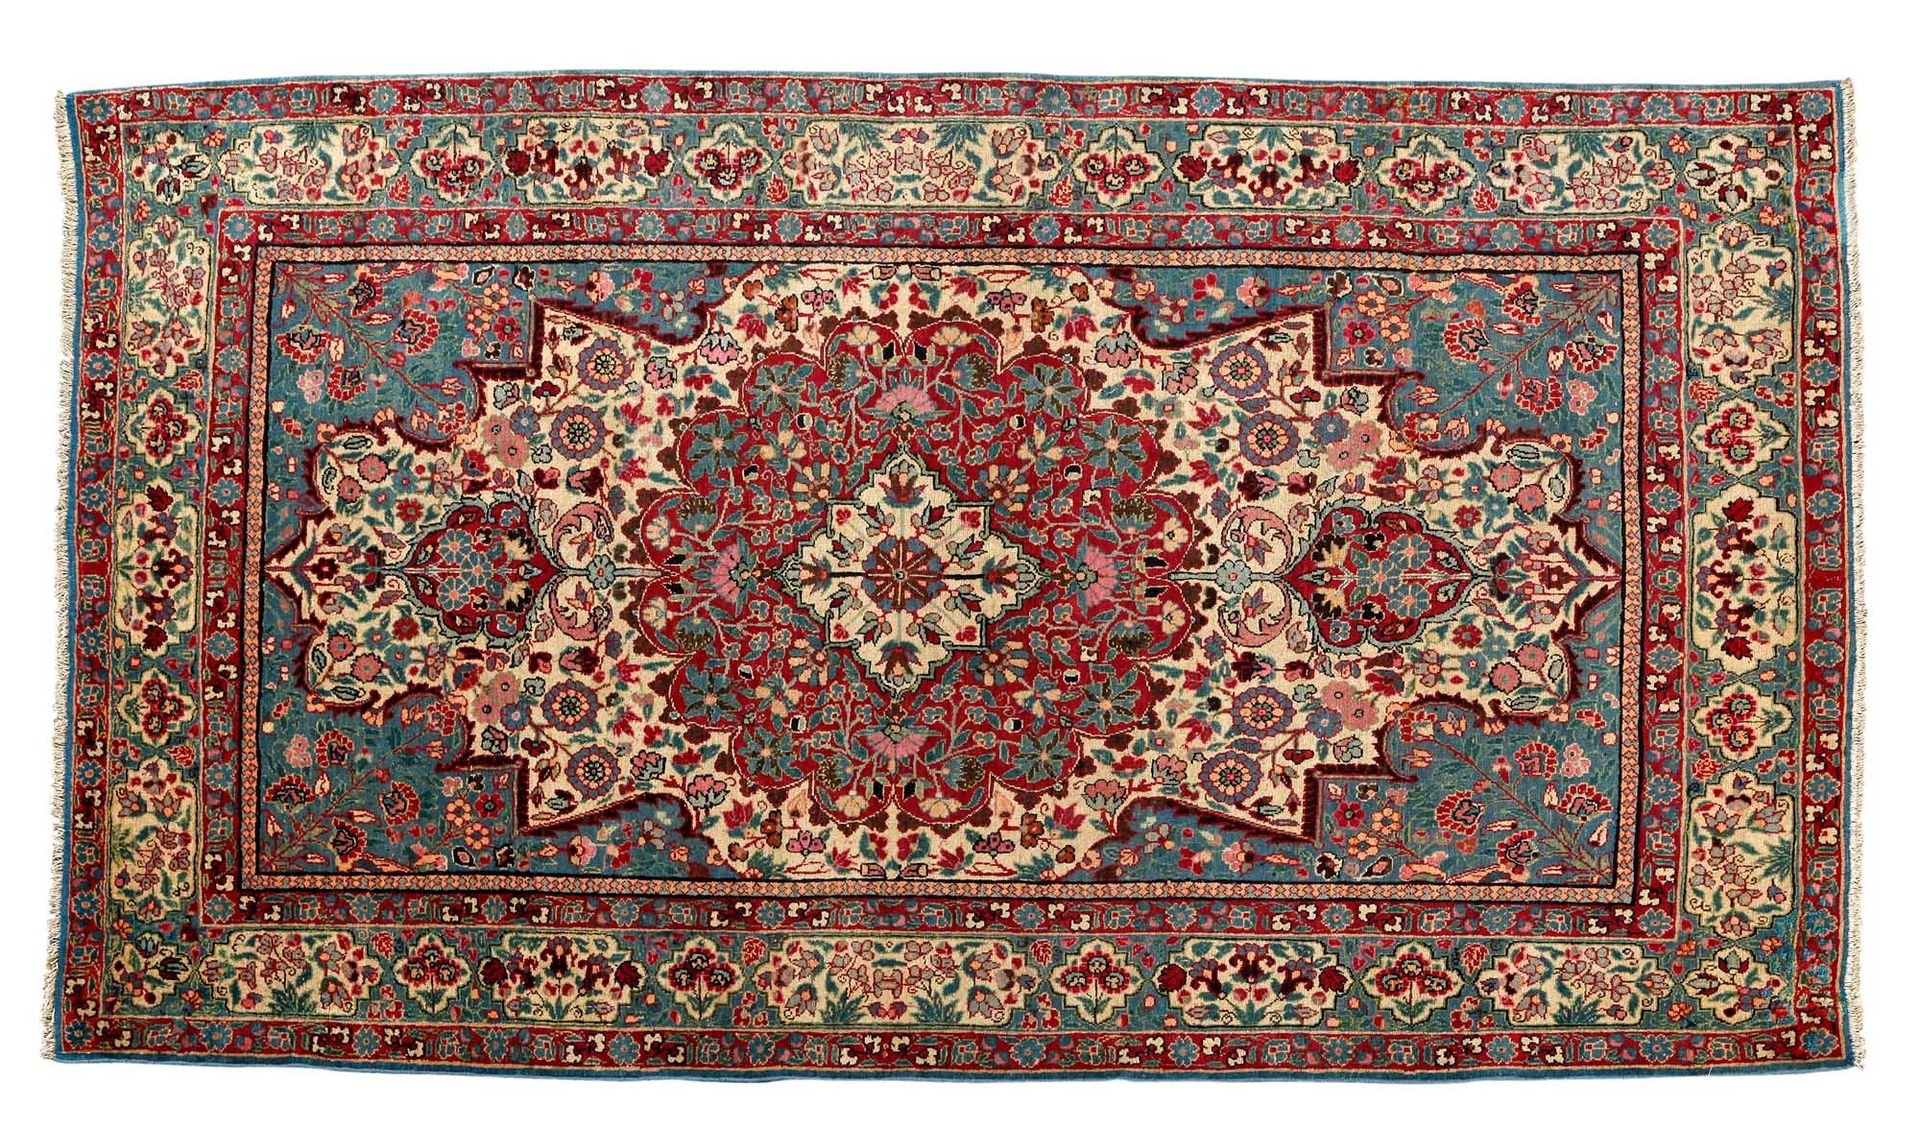 Null 德黑兰（波斯）地毯，20世纪初

尺寸：227 X 145厘米

技术特点 : 羊毛天鹅绒，棉质底板。

绿松石背景，精致的多色田园花卉

围绕着一个&hellip;